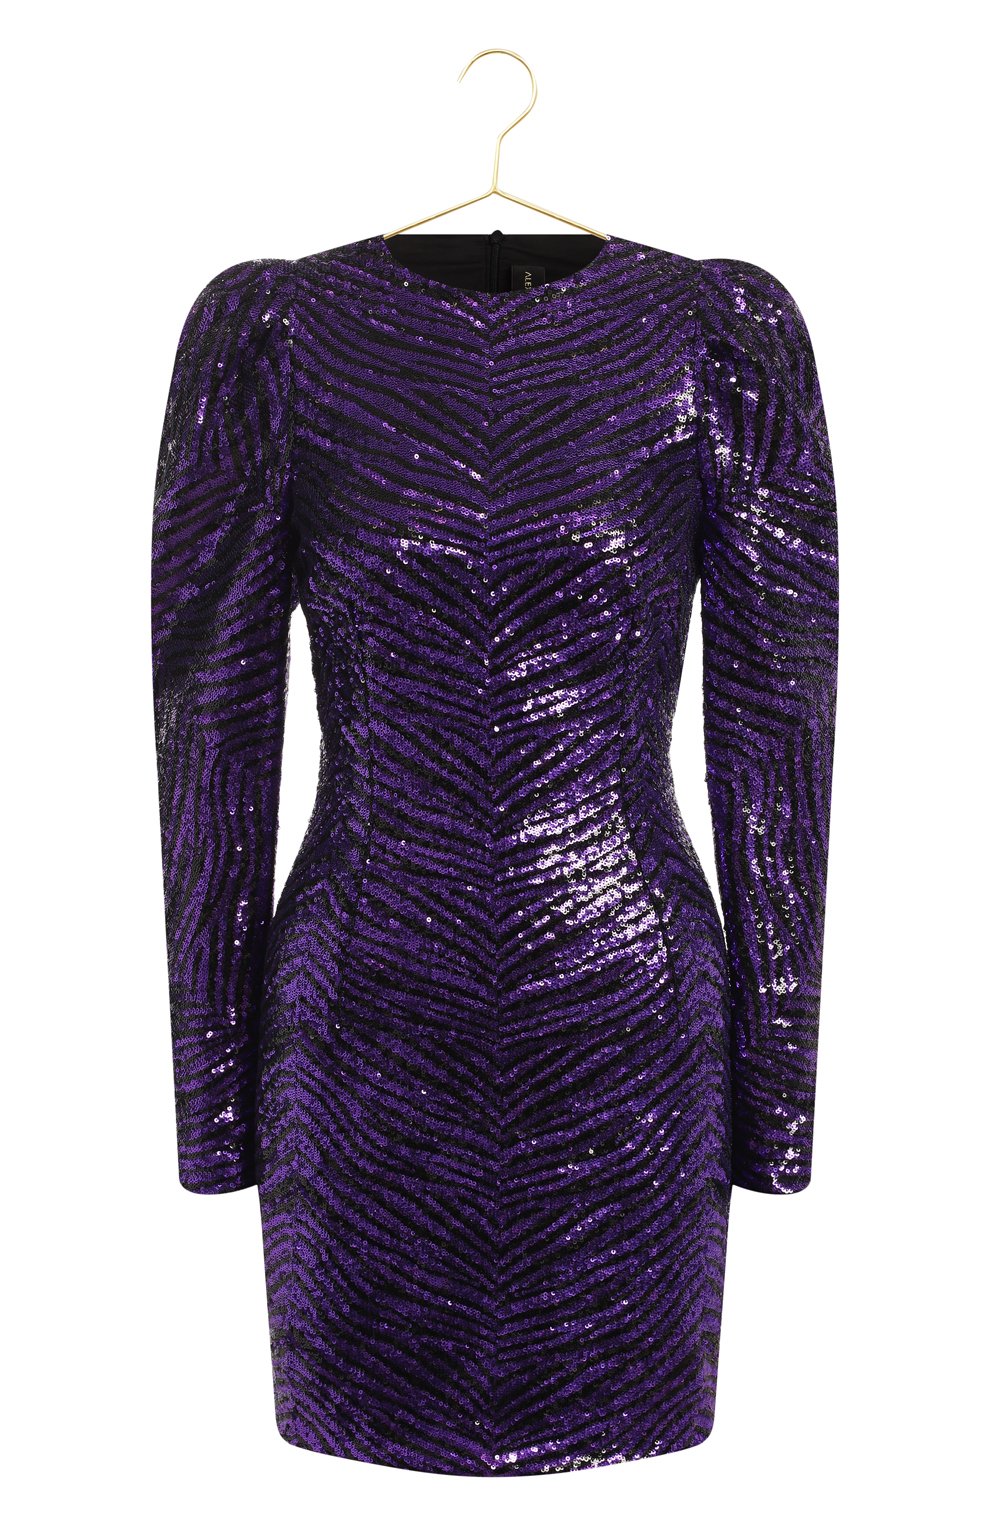 Платье с отделкой пайетками | Alexandre Vauthier | Фиолетовый - 1